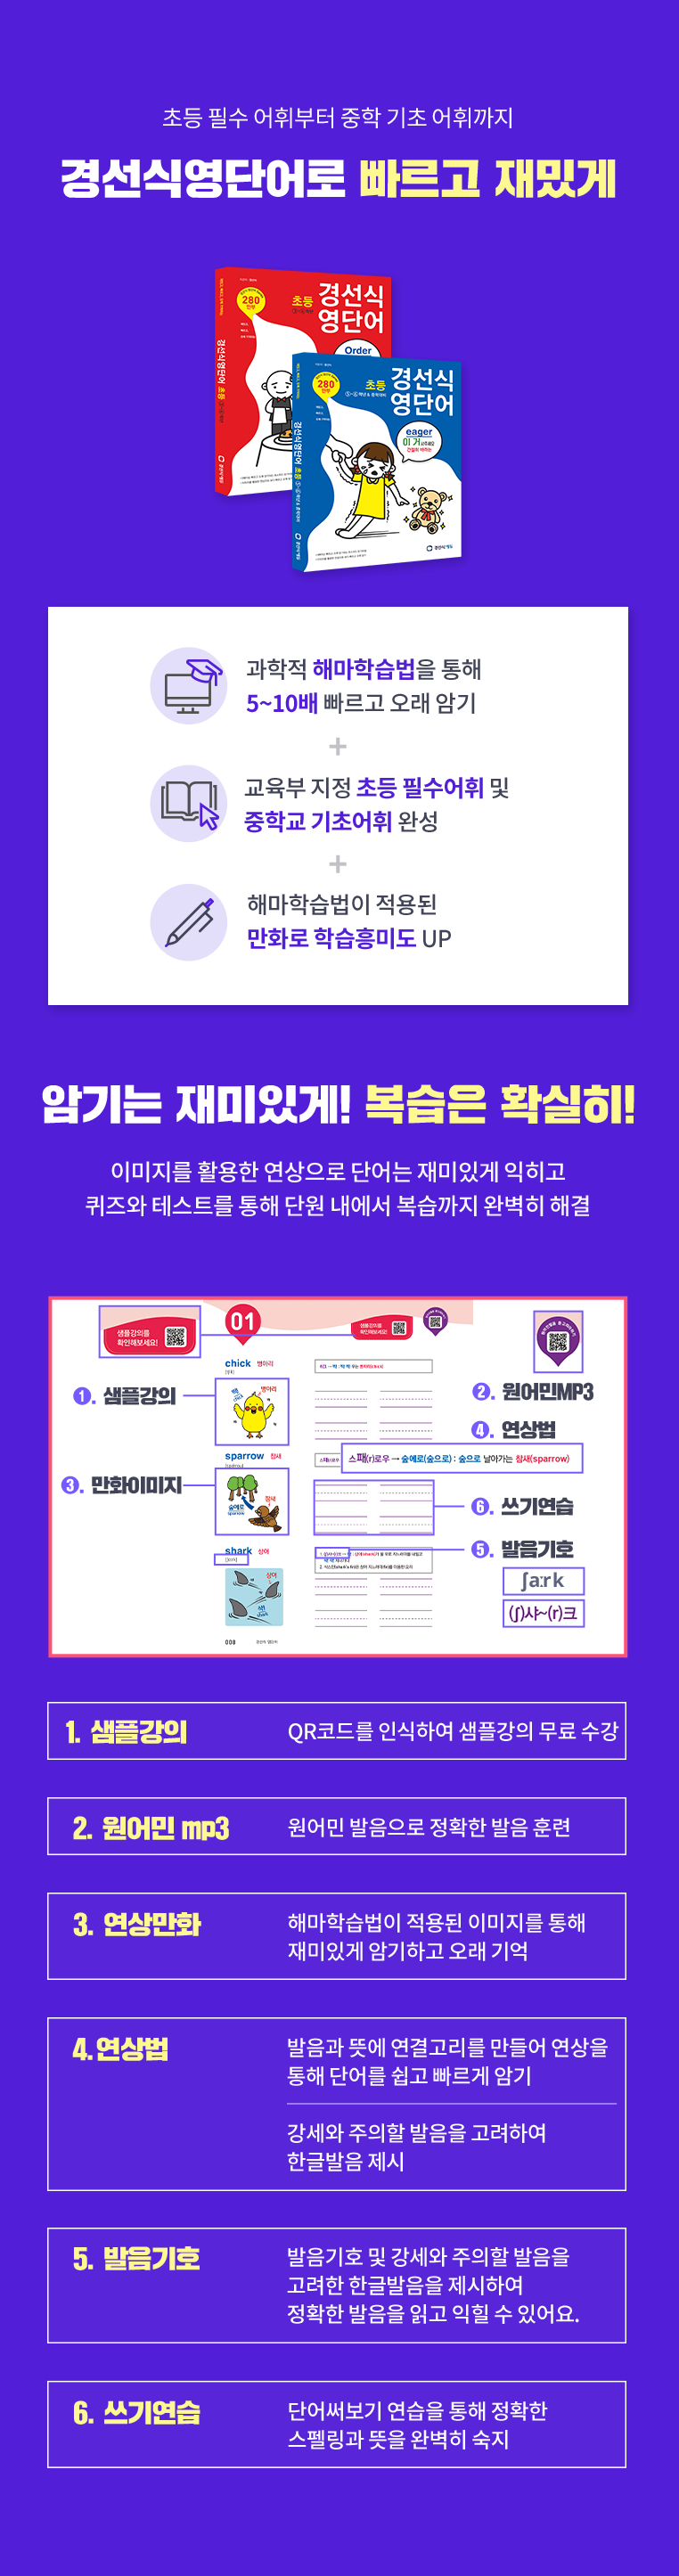 강의효과와 비교 모바일